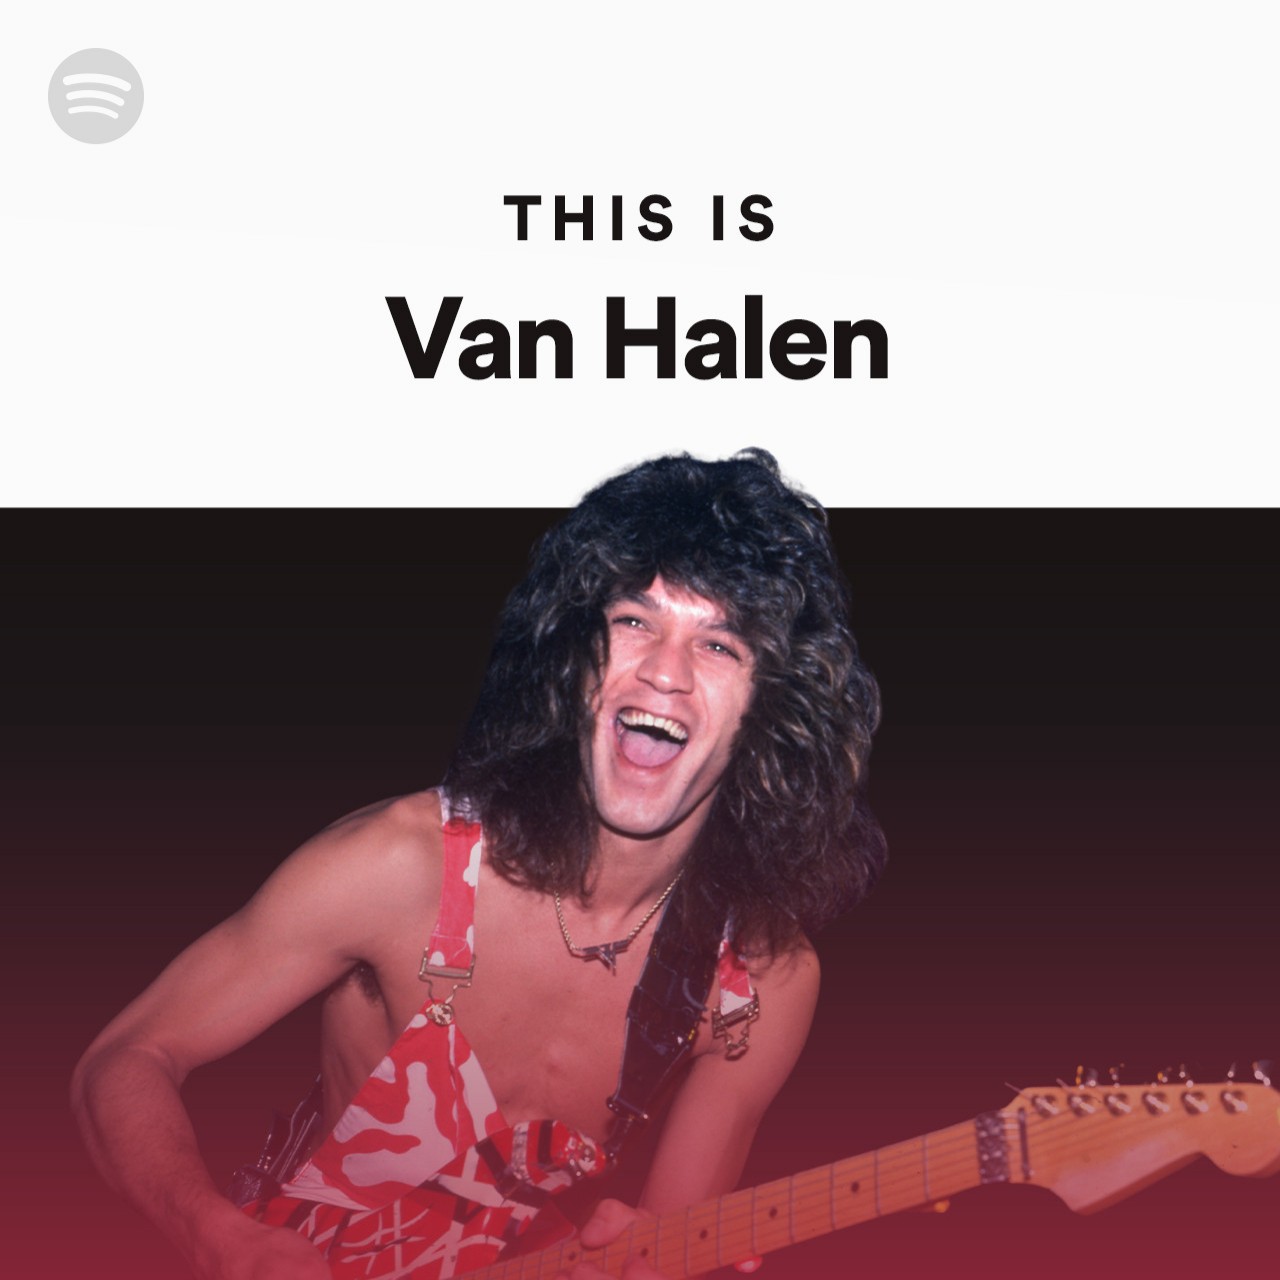 This is Van Halen